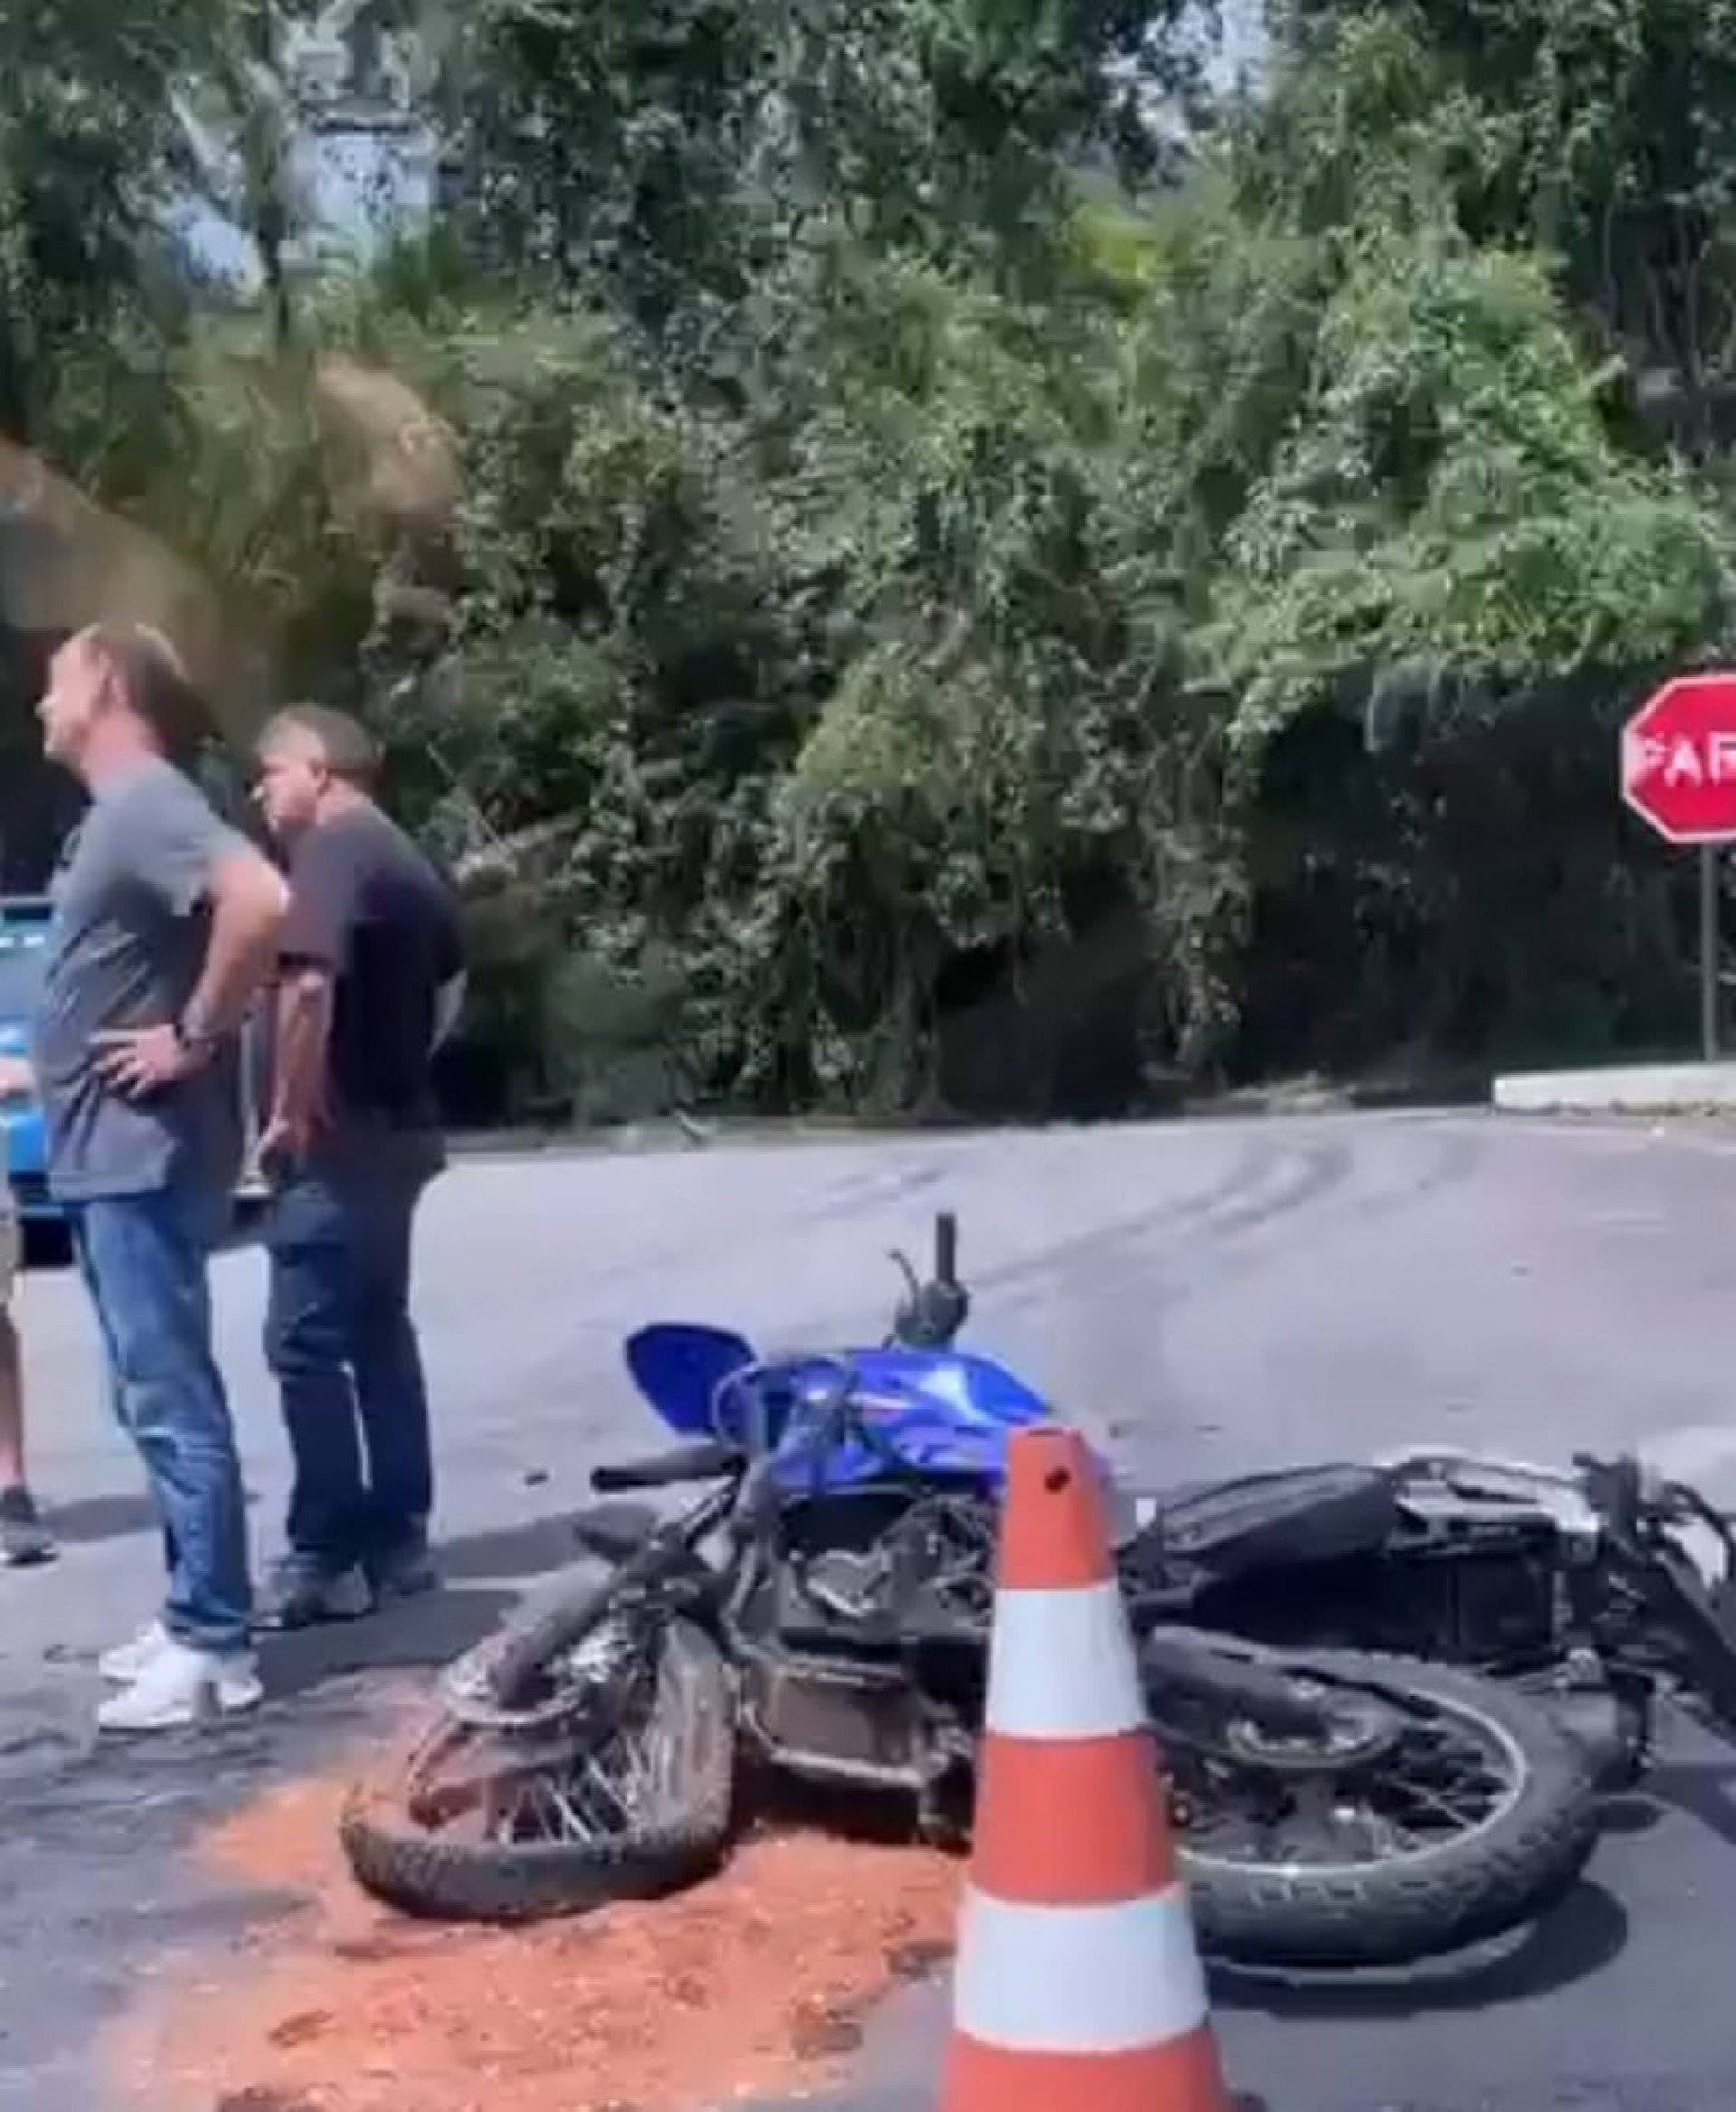 Motociclista ferido no acidente de hoje. - Divulgação/rede social